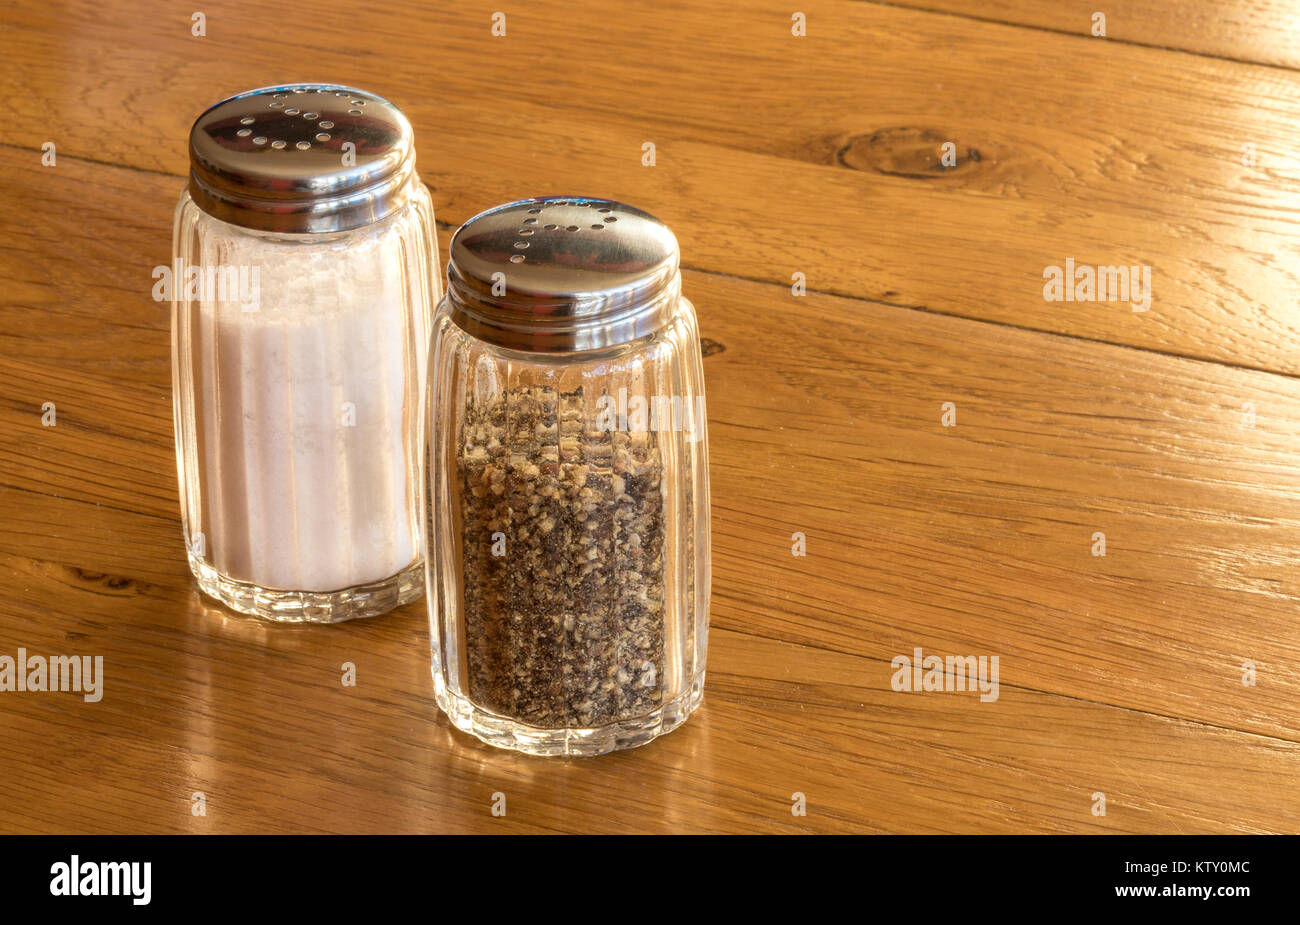 In der Nähe von Glas Salz- und Pfefferstreuer oder Salz- und Pfefferstreuer auf einem Holztisch, sehr häufig Speisen würzen auf jedem Tisch beim Essen gesehen Stockfoto